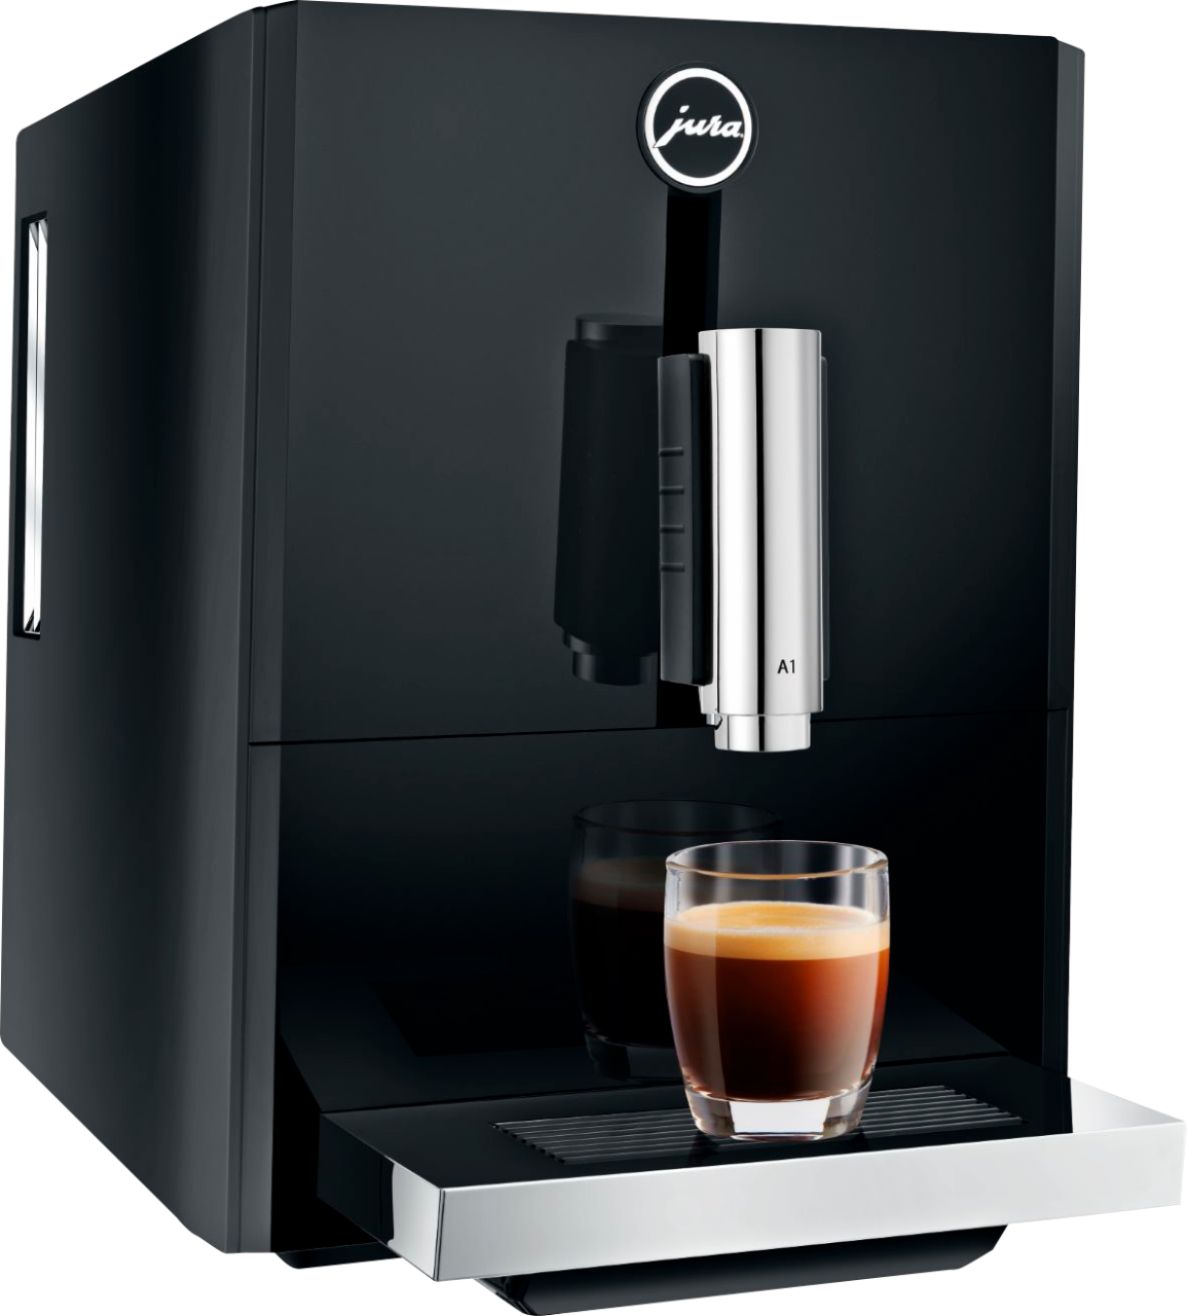 Left View: Jura - A1 Espresso Machine with 15 bars of pressure - Piano Black